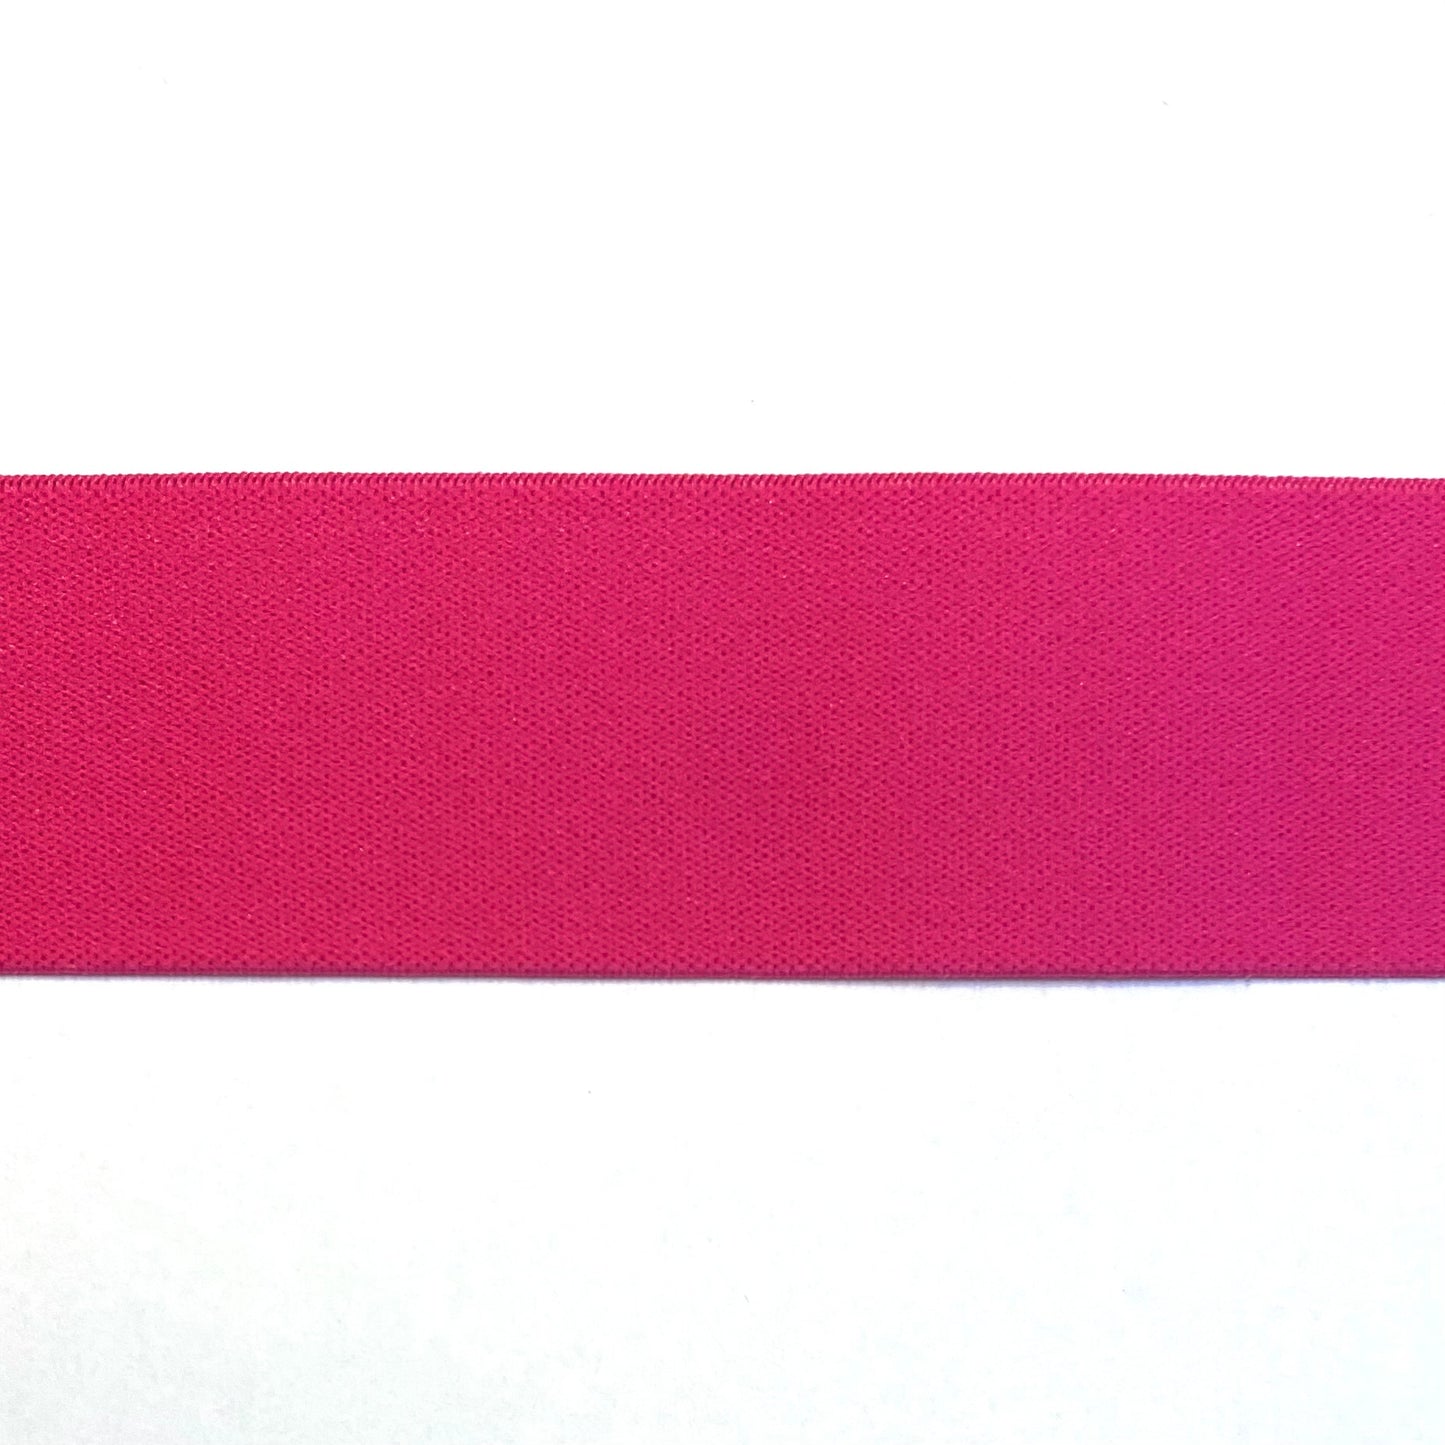 Pink elastic 40 mm